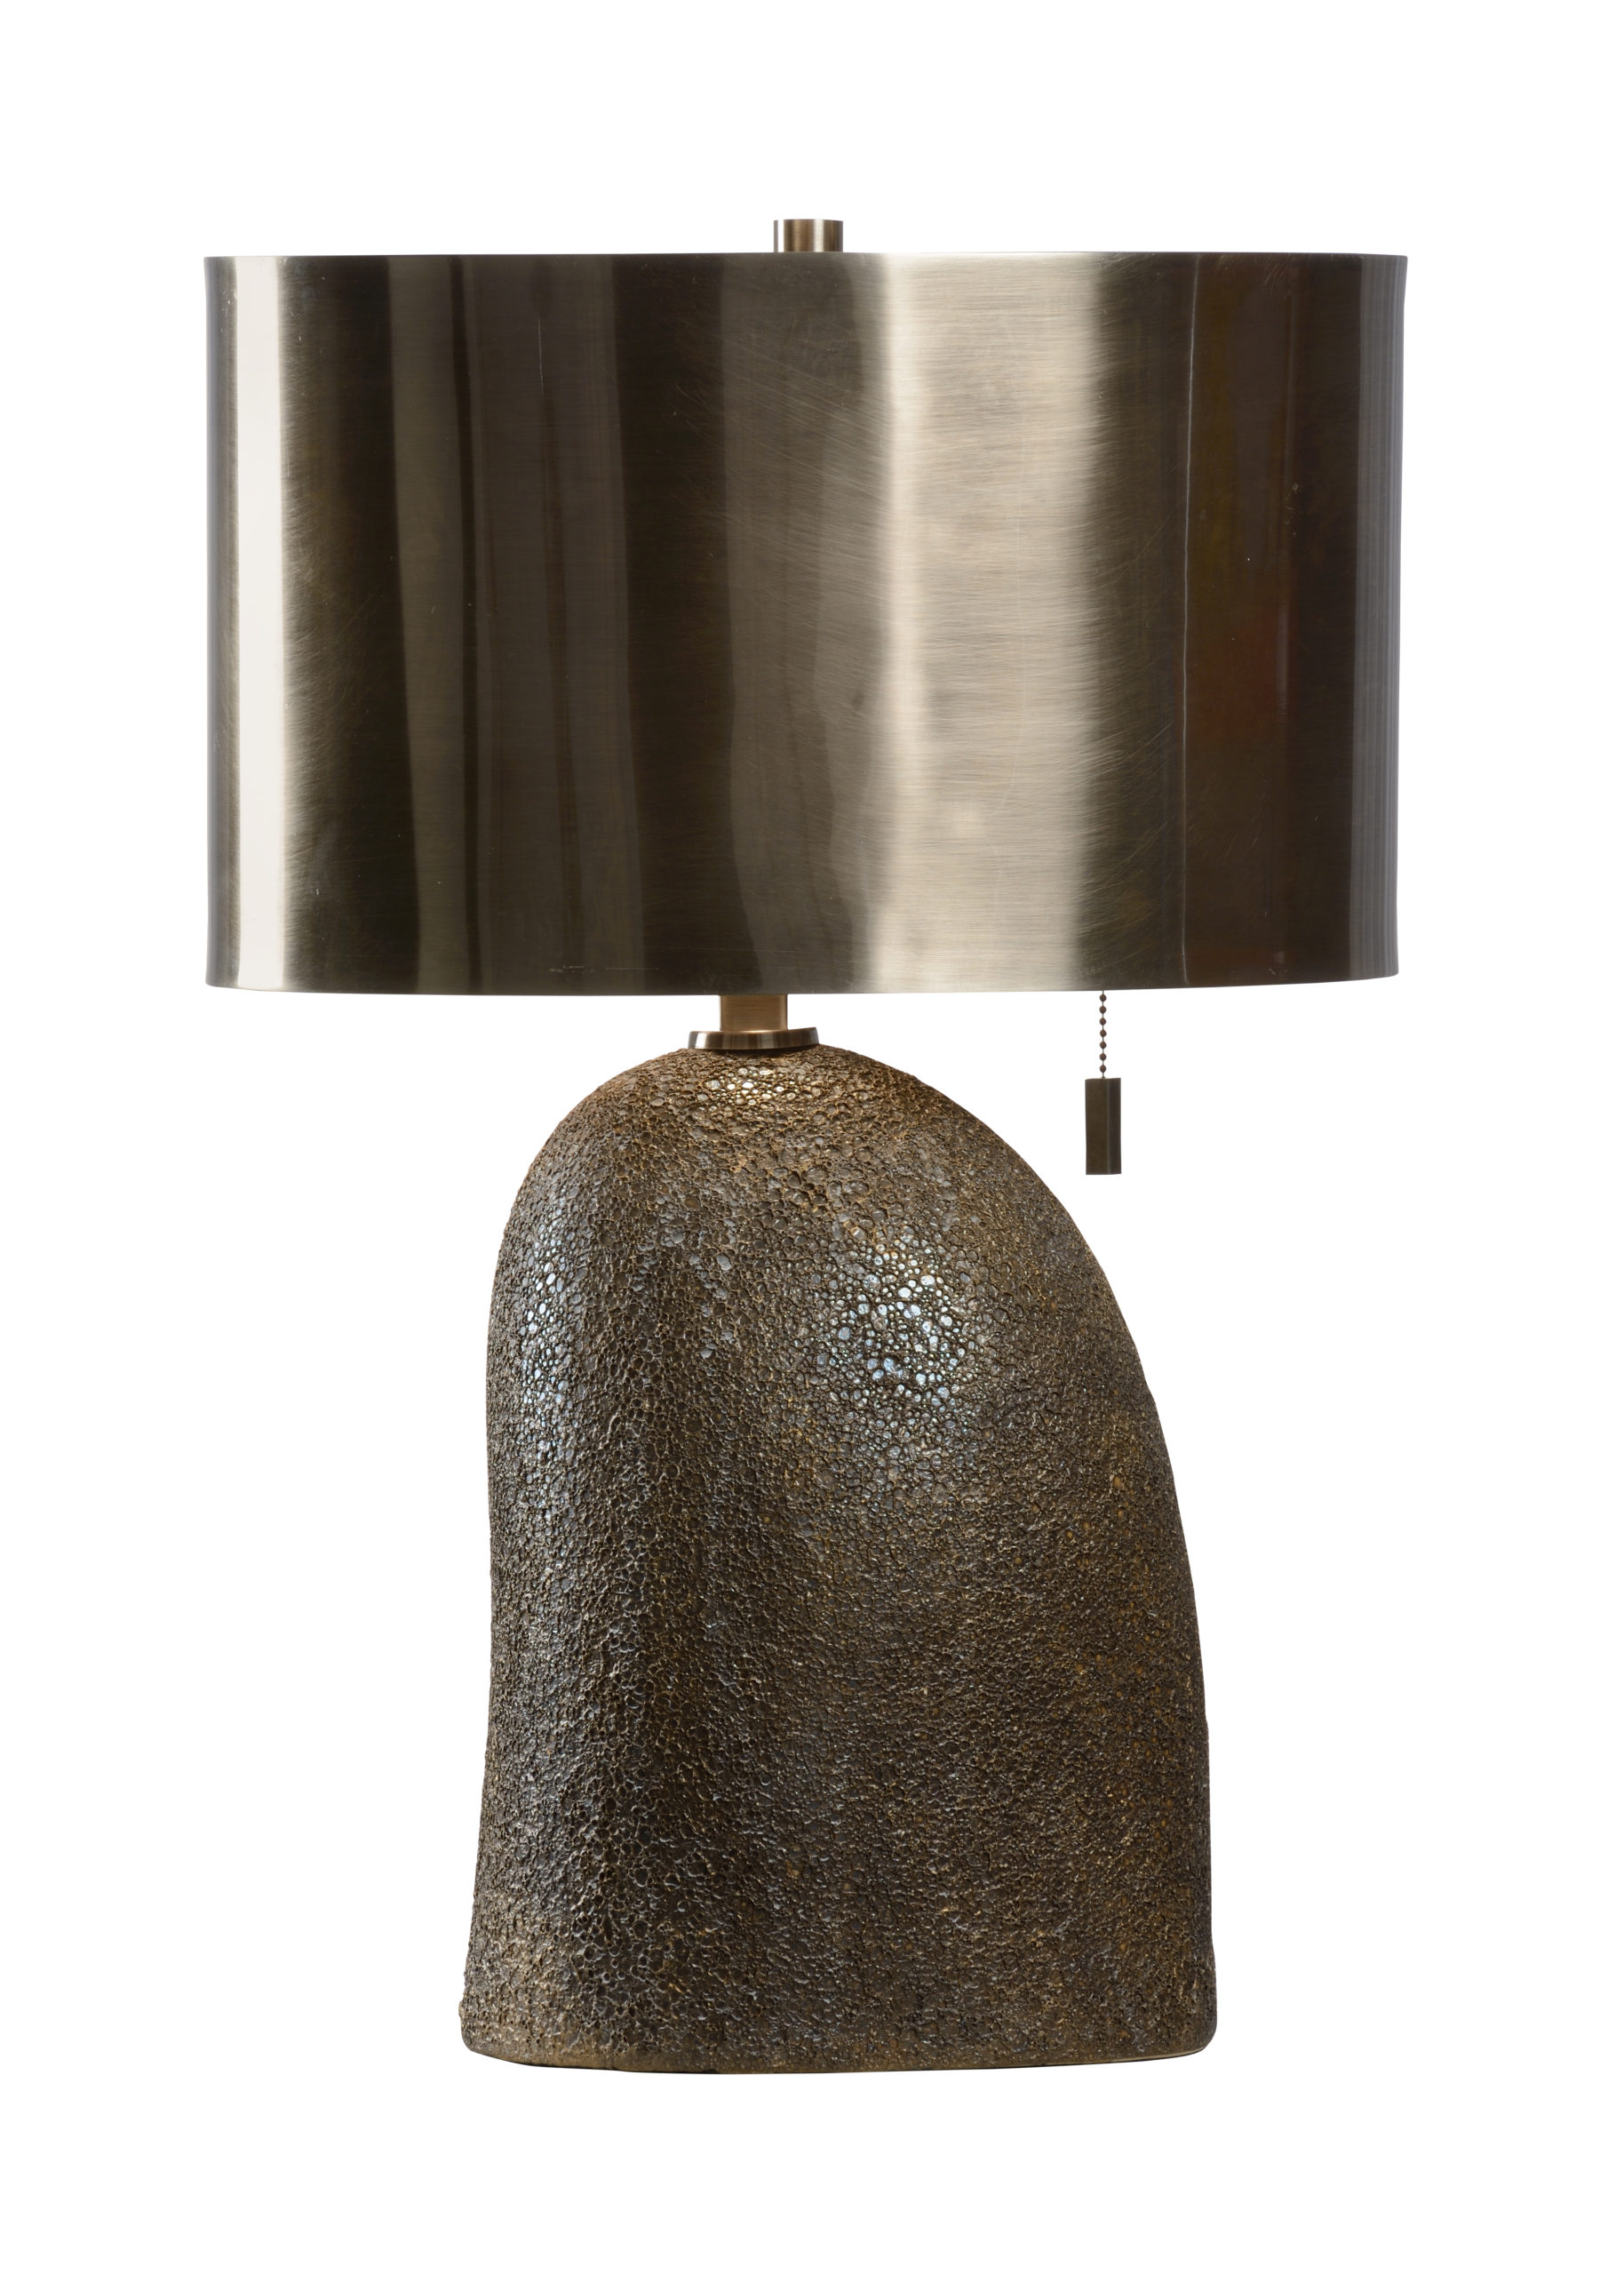 Sugarloaf Lamp